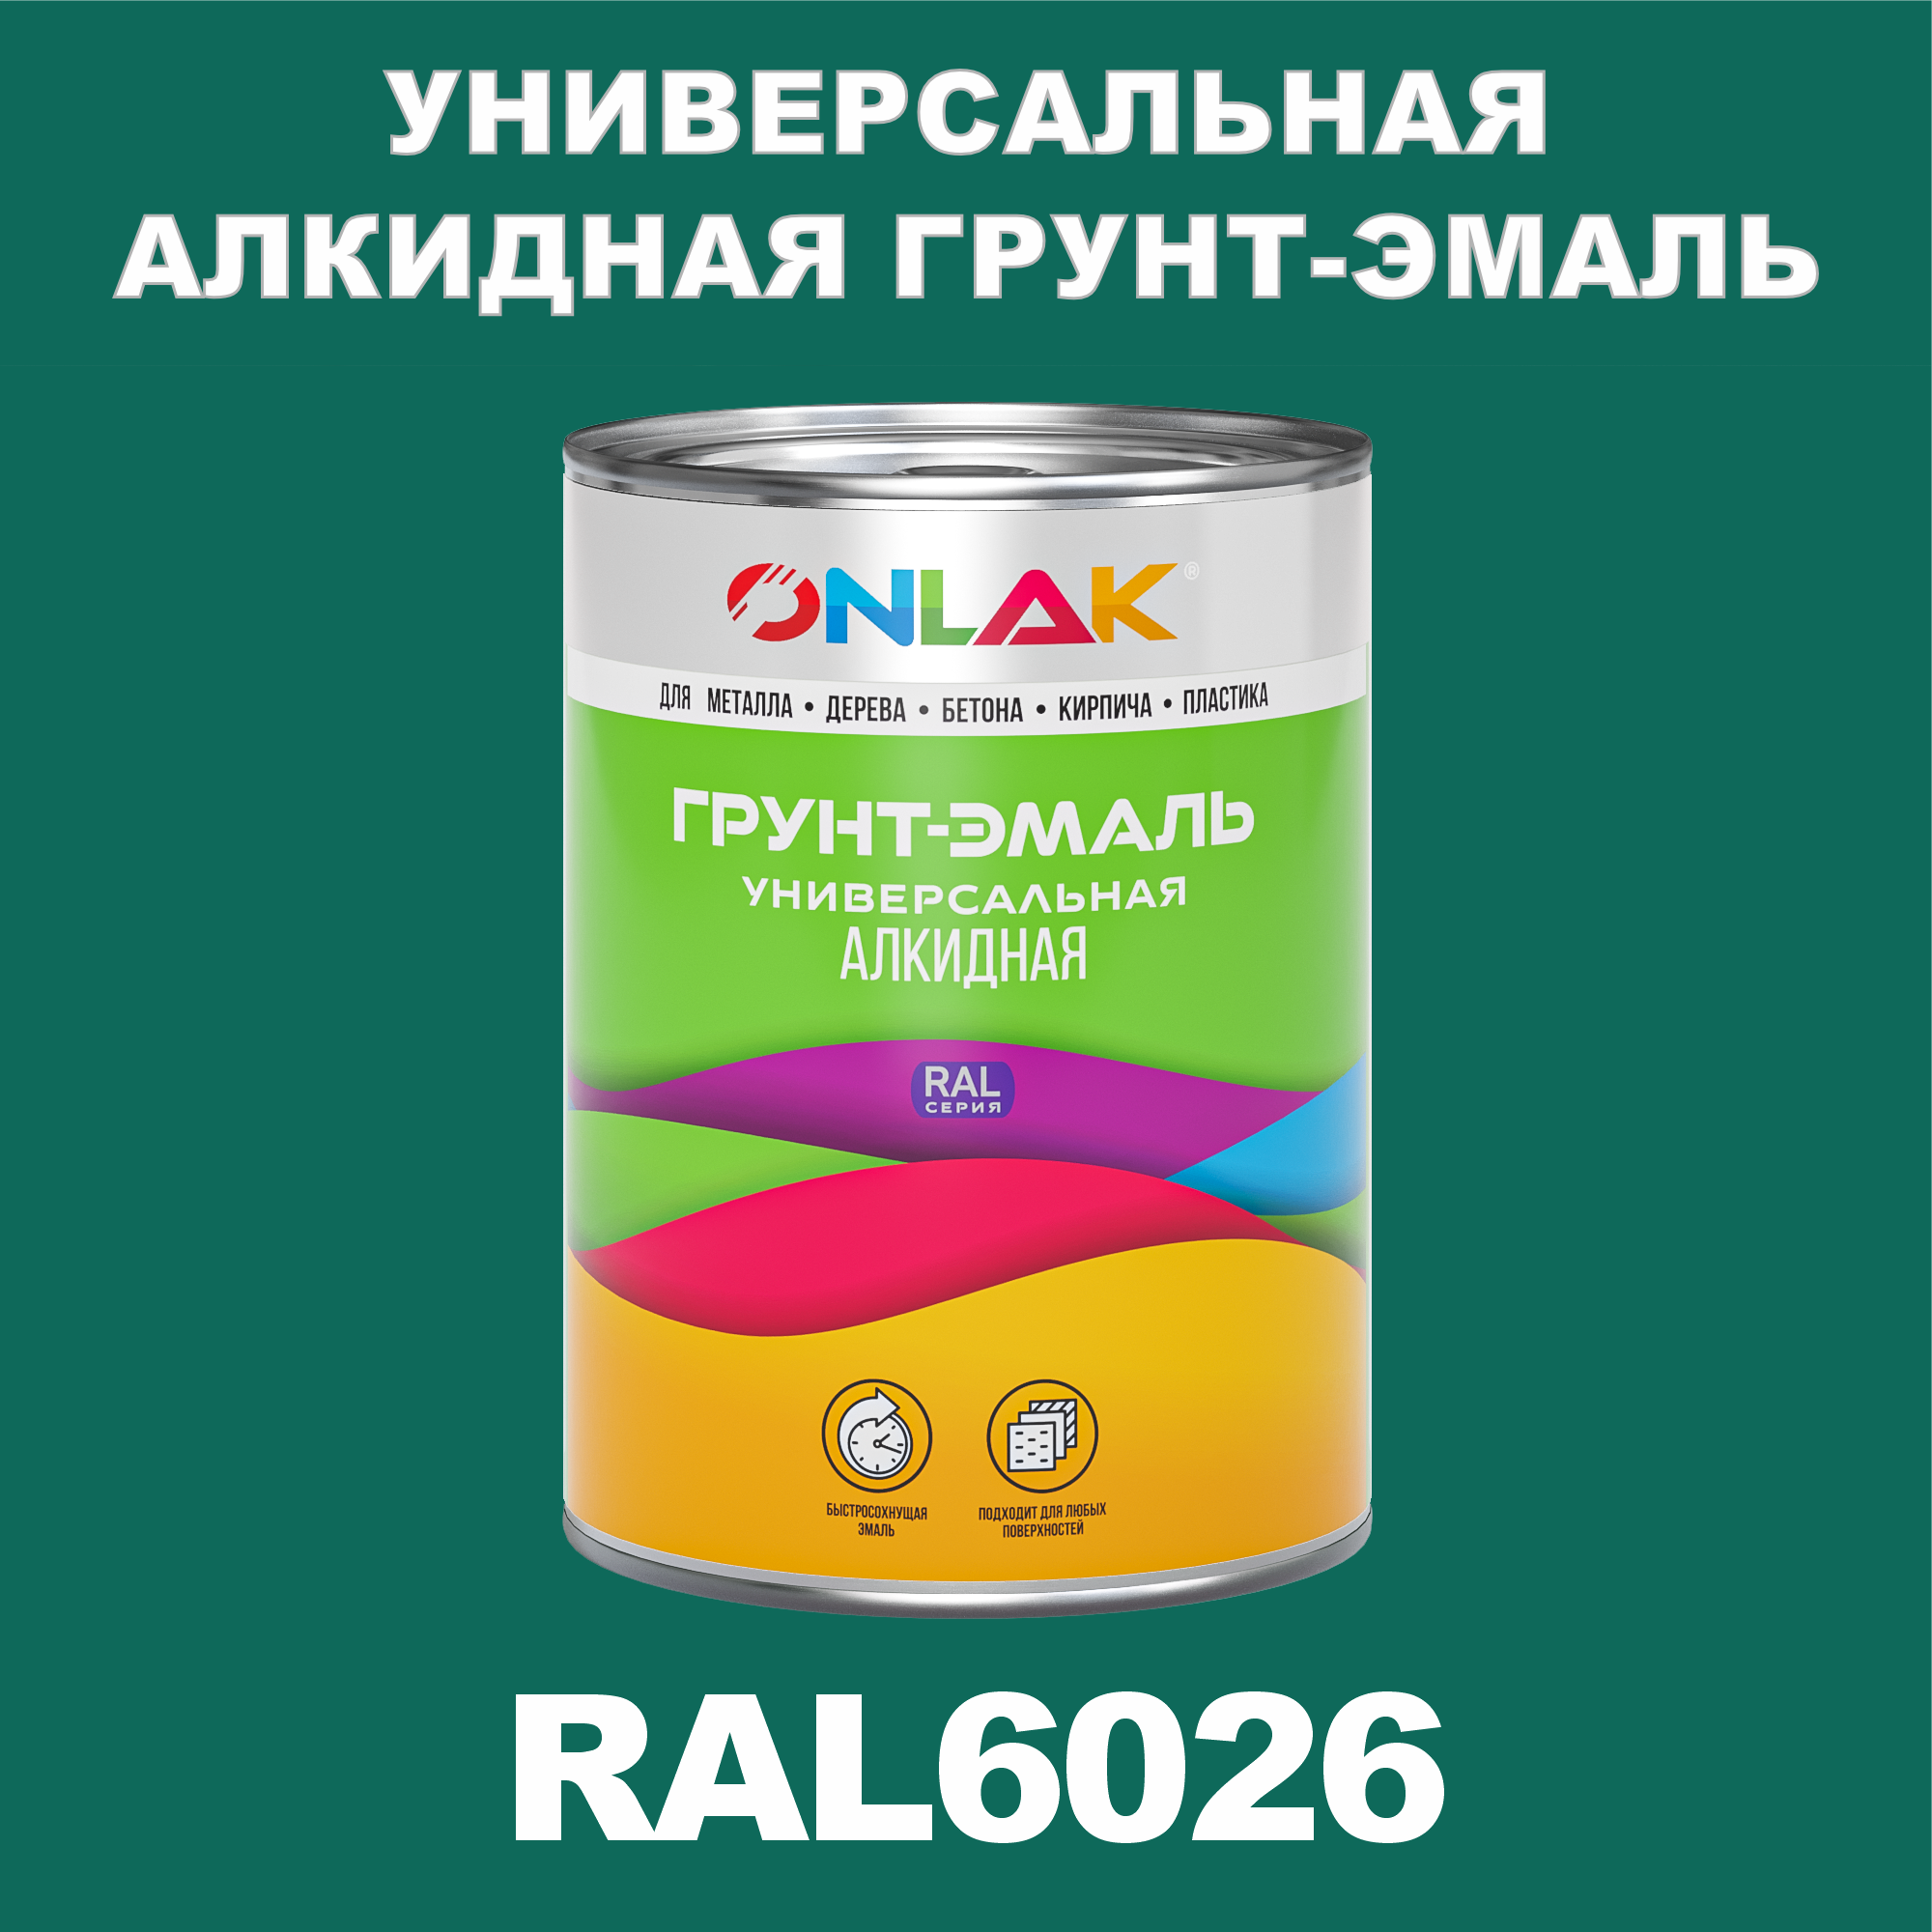 Грунт-эмаль ONLAK 1К RAL6026 антикоррозионная алкидная по металлу по ржавчине 1 кг грунт эмаль yollo по ржавчине алкидная серая 0 9 кг